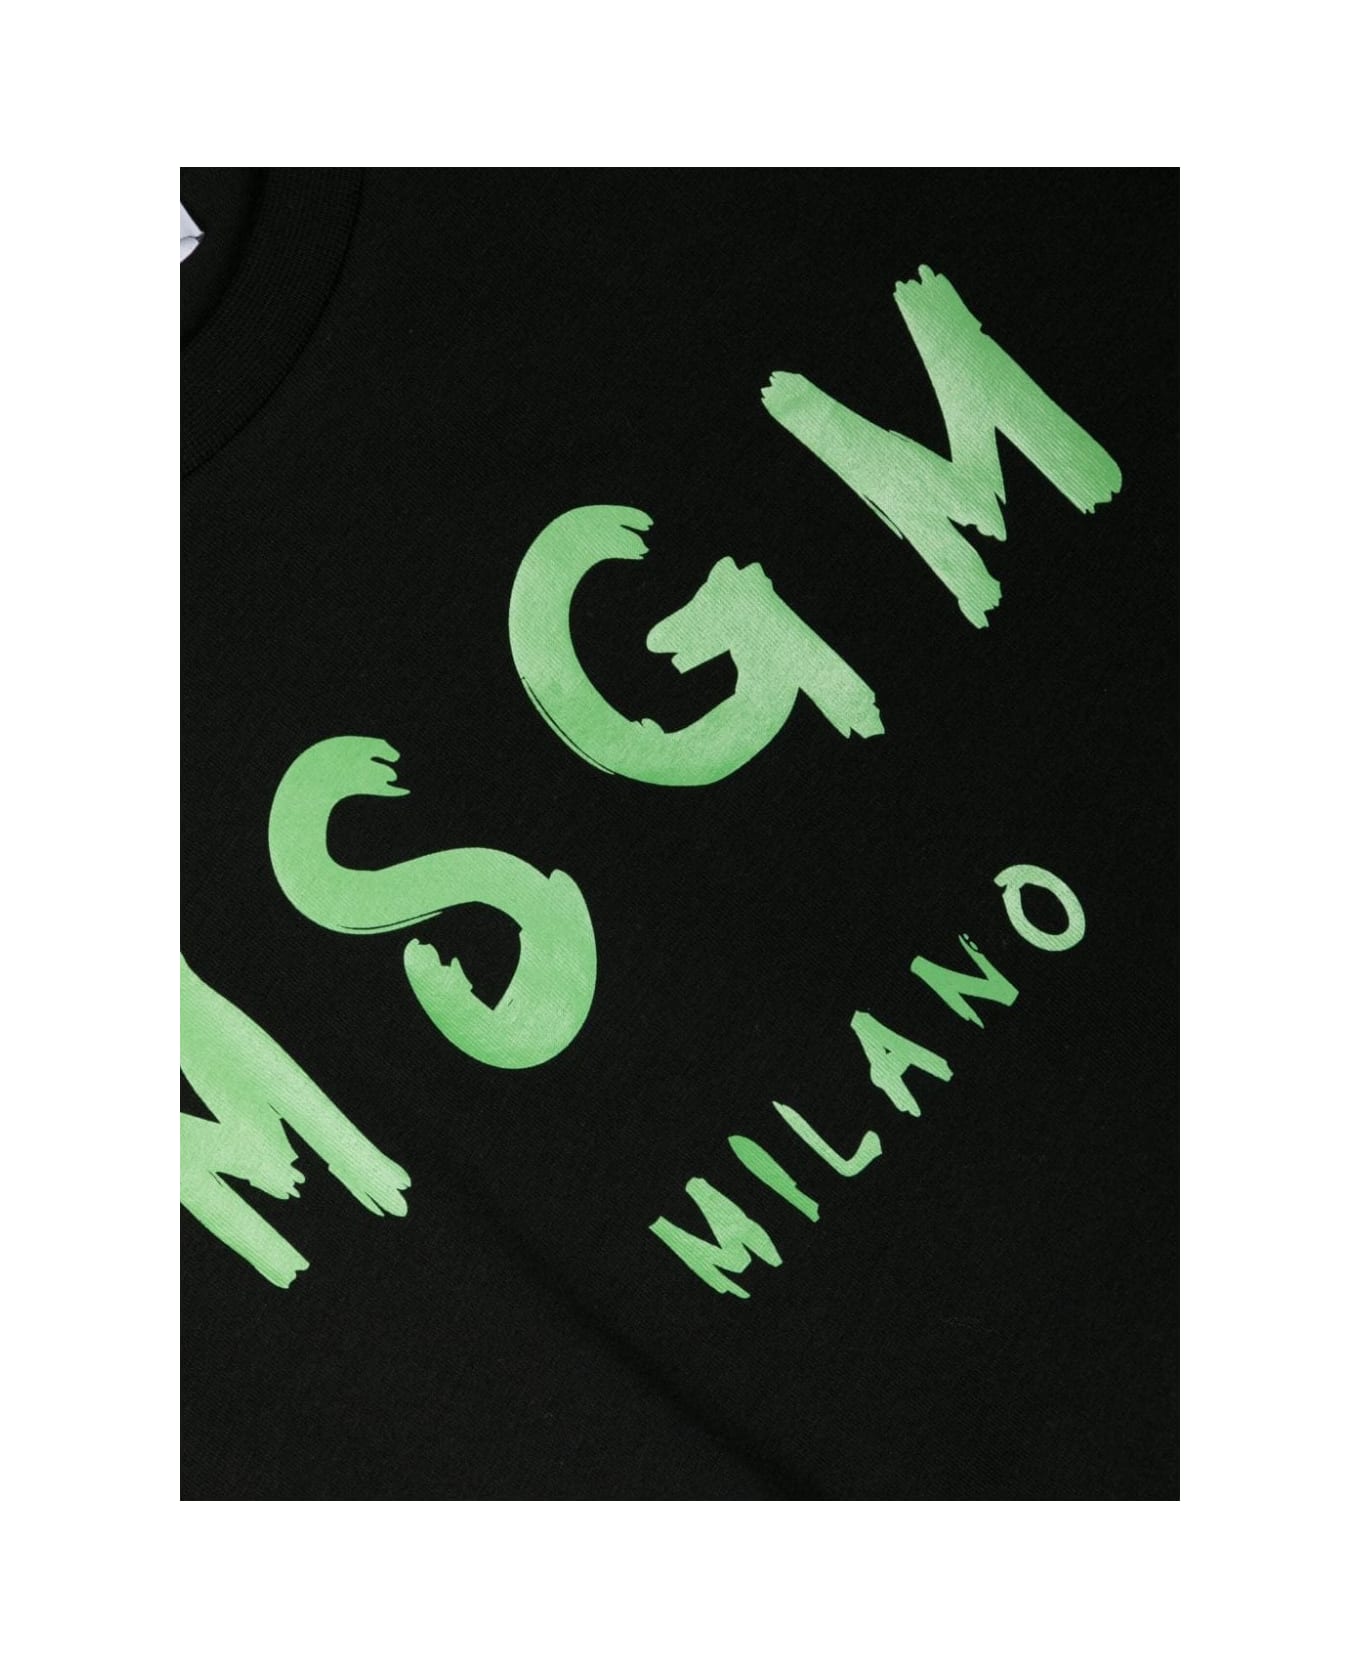 MSGM T-shirt Con Logo - Black